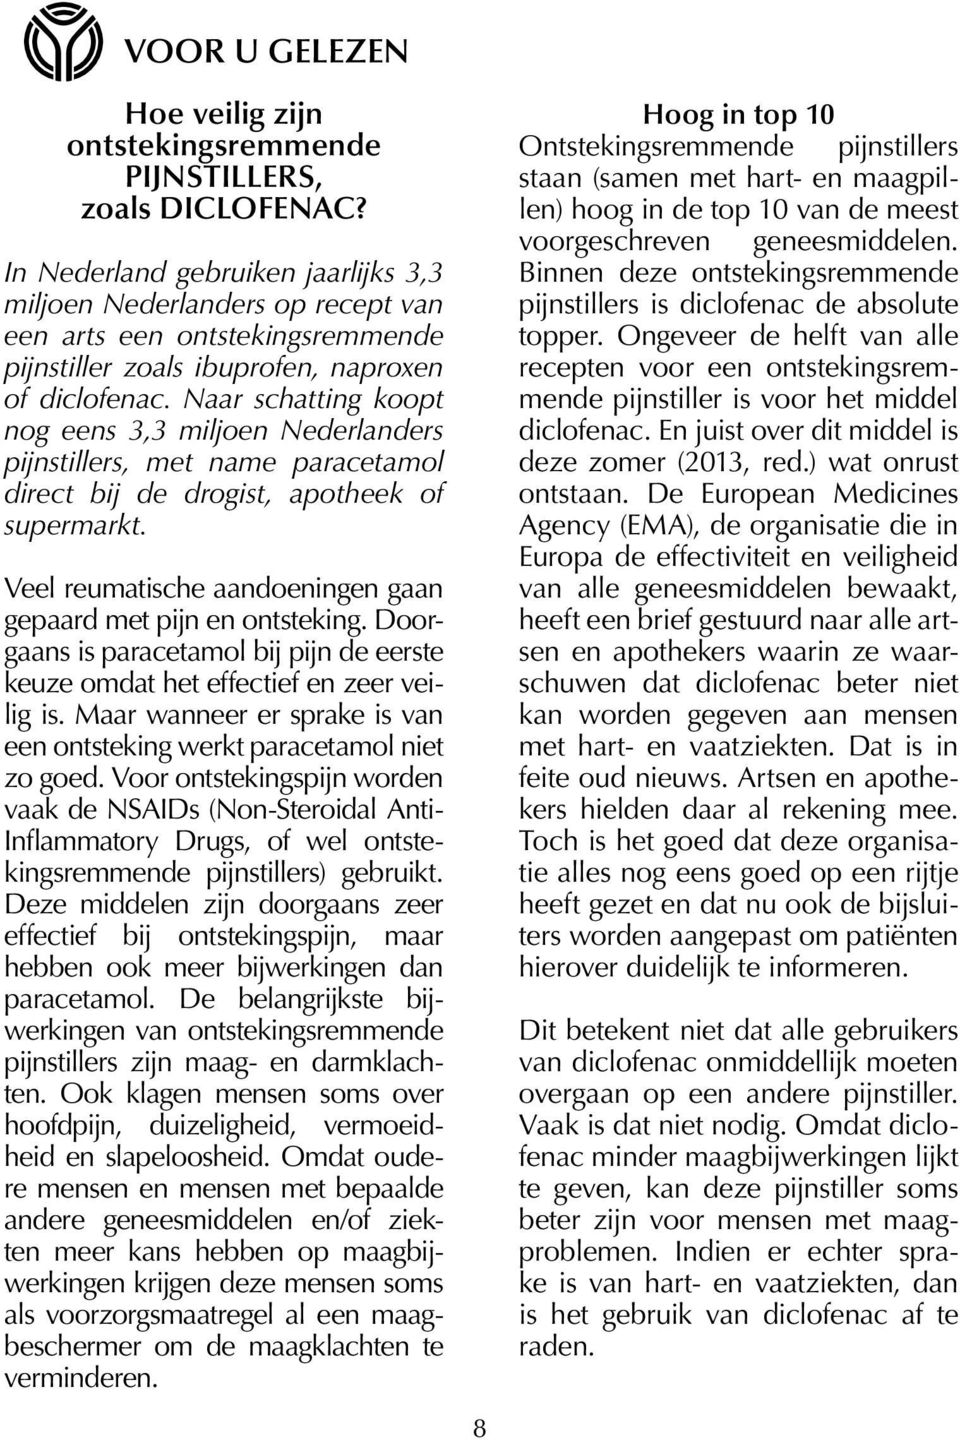 Naar schatting koopt nog eens 3,3 miljoen Nederlanders pijnstillers, met name paracetamol direct bij de drogist, apotheek of supermarkt.